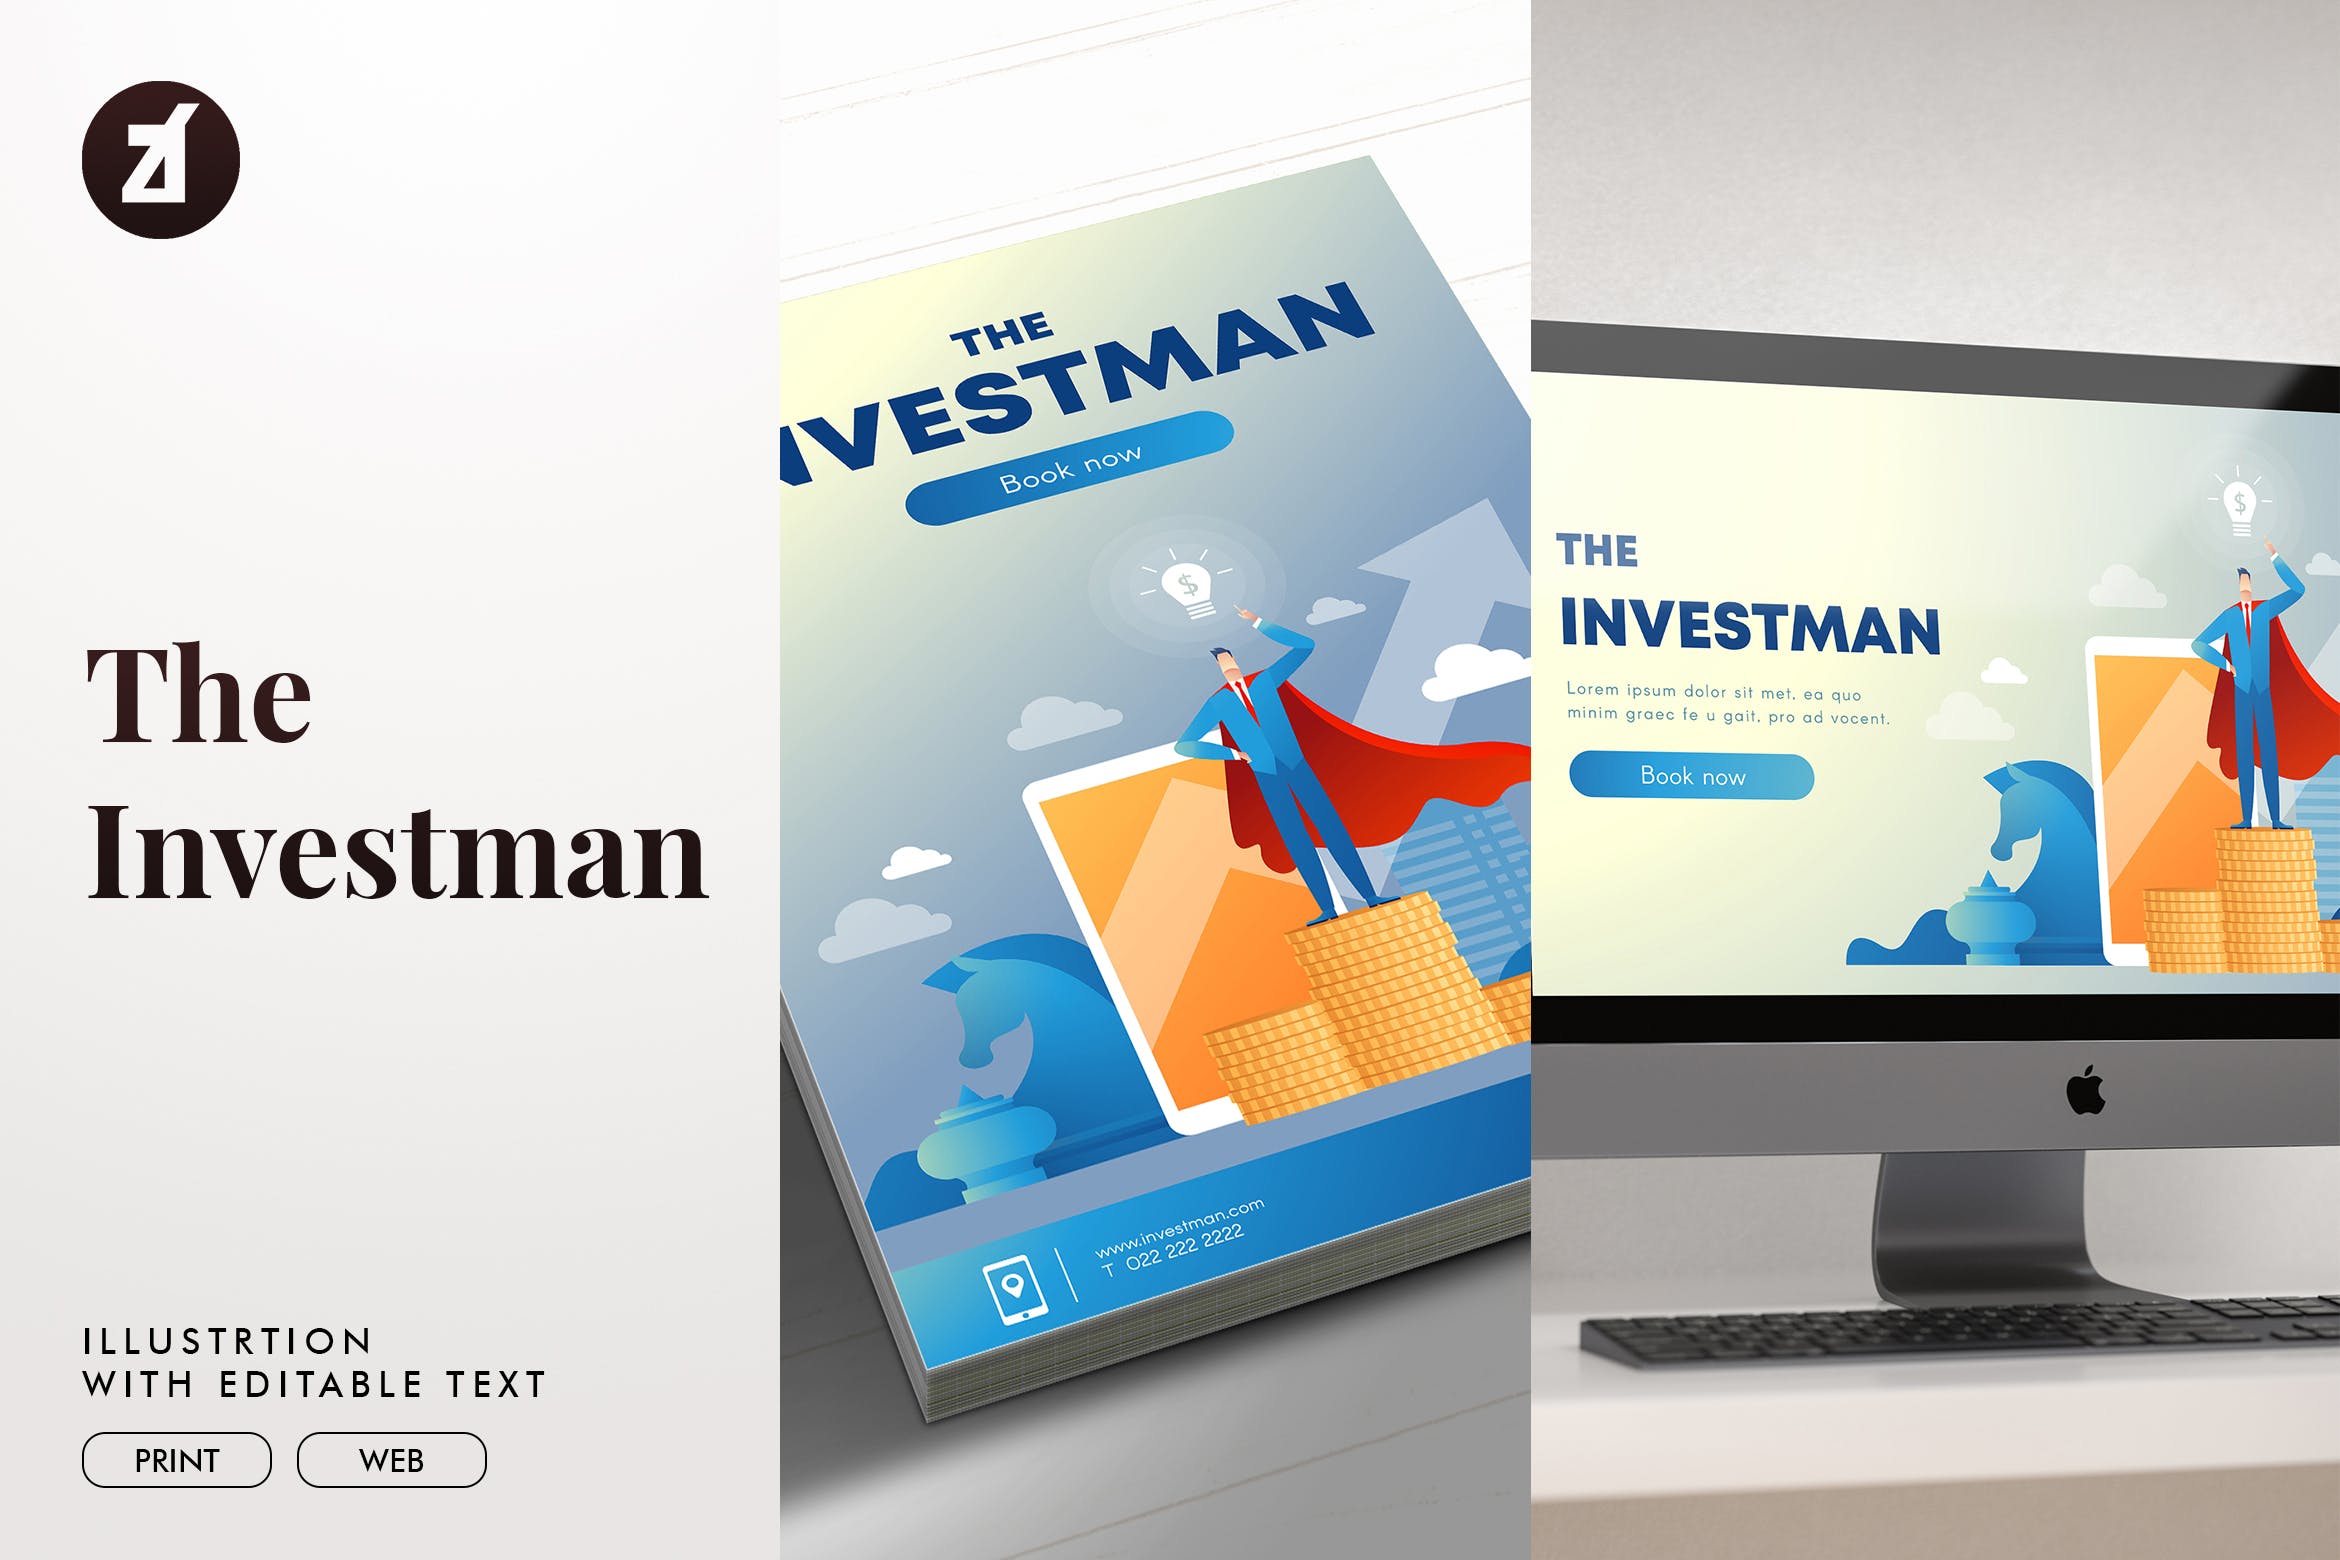 投资者主题矢量第一素材精选概念插画素材 The investman illustration with text layout插图